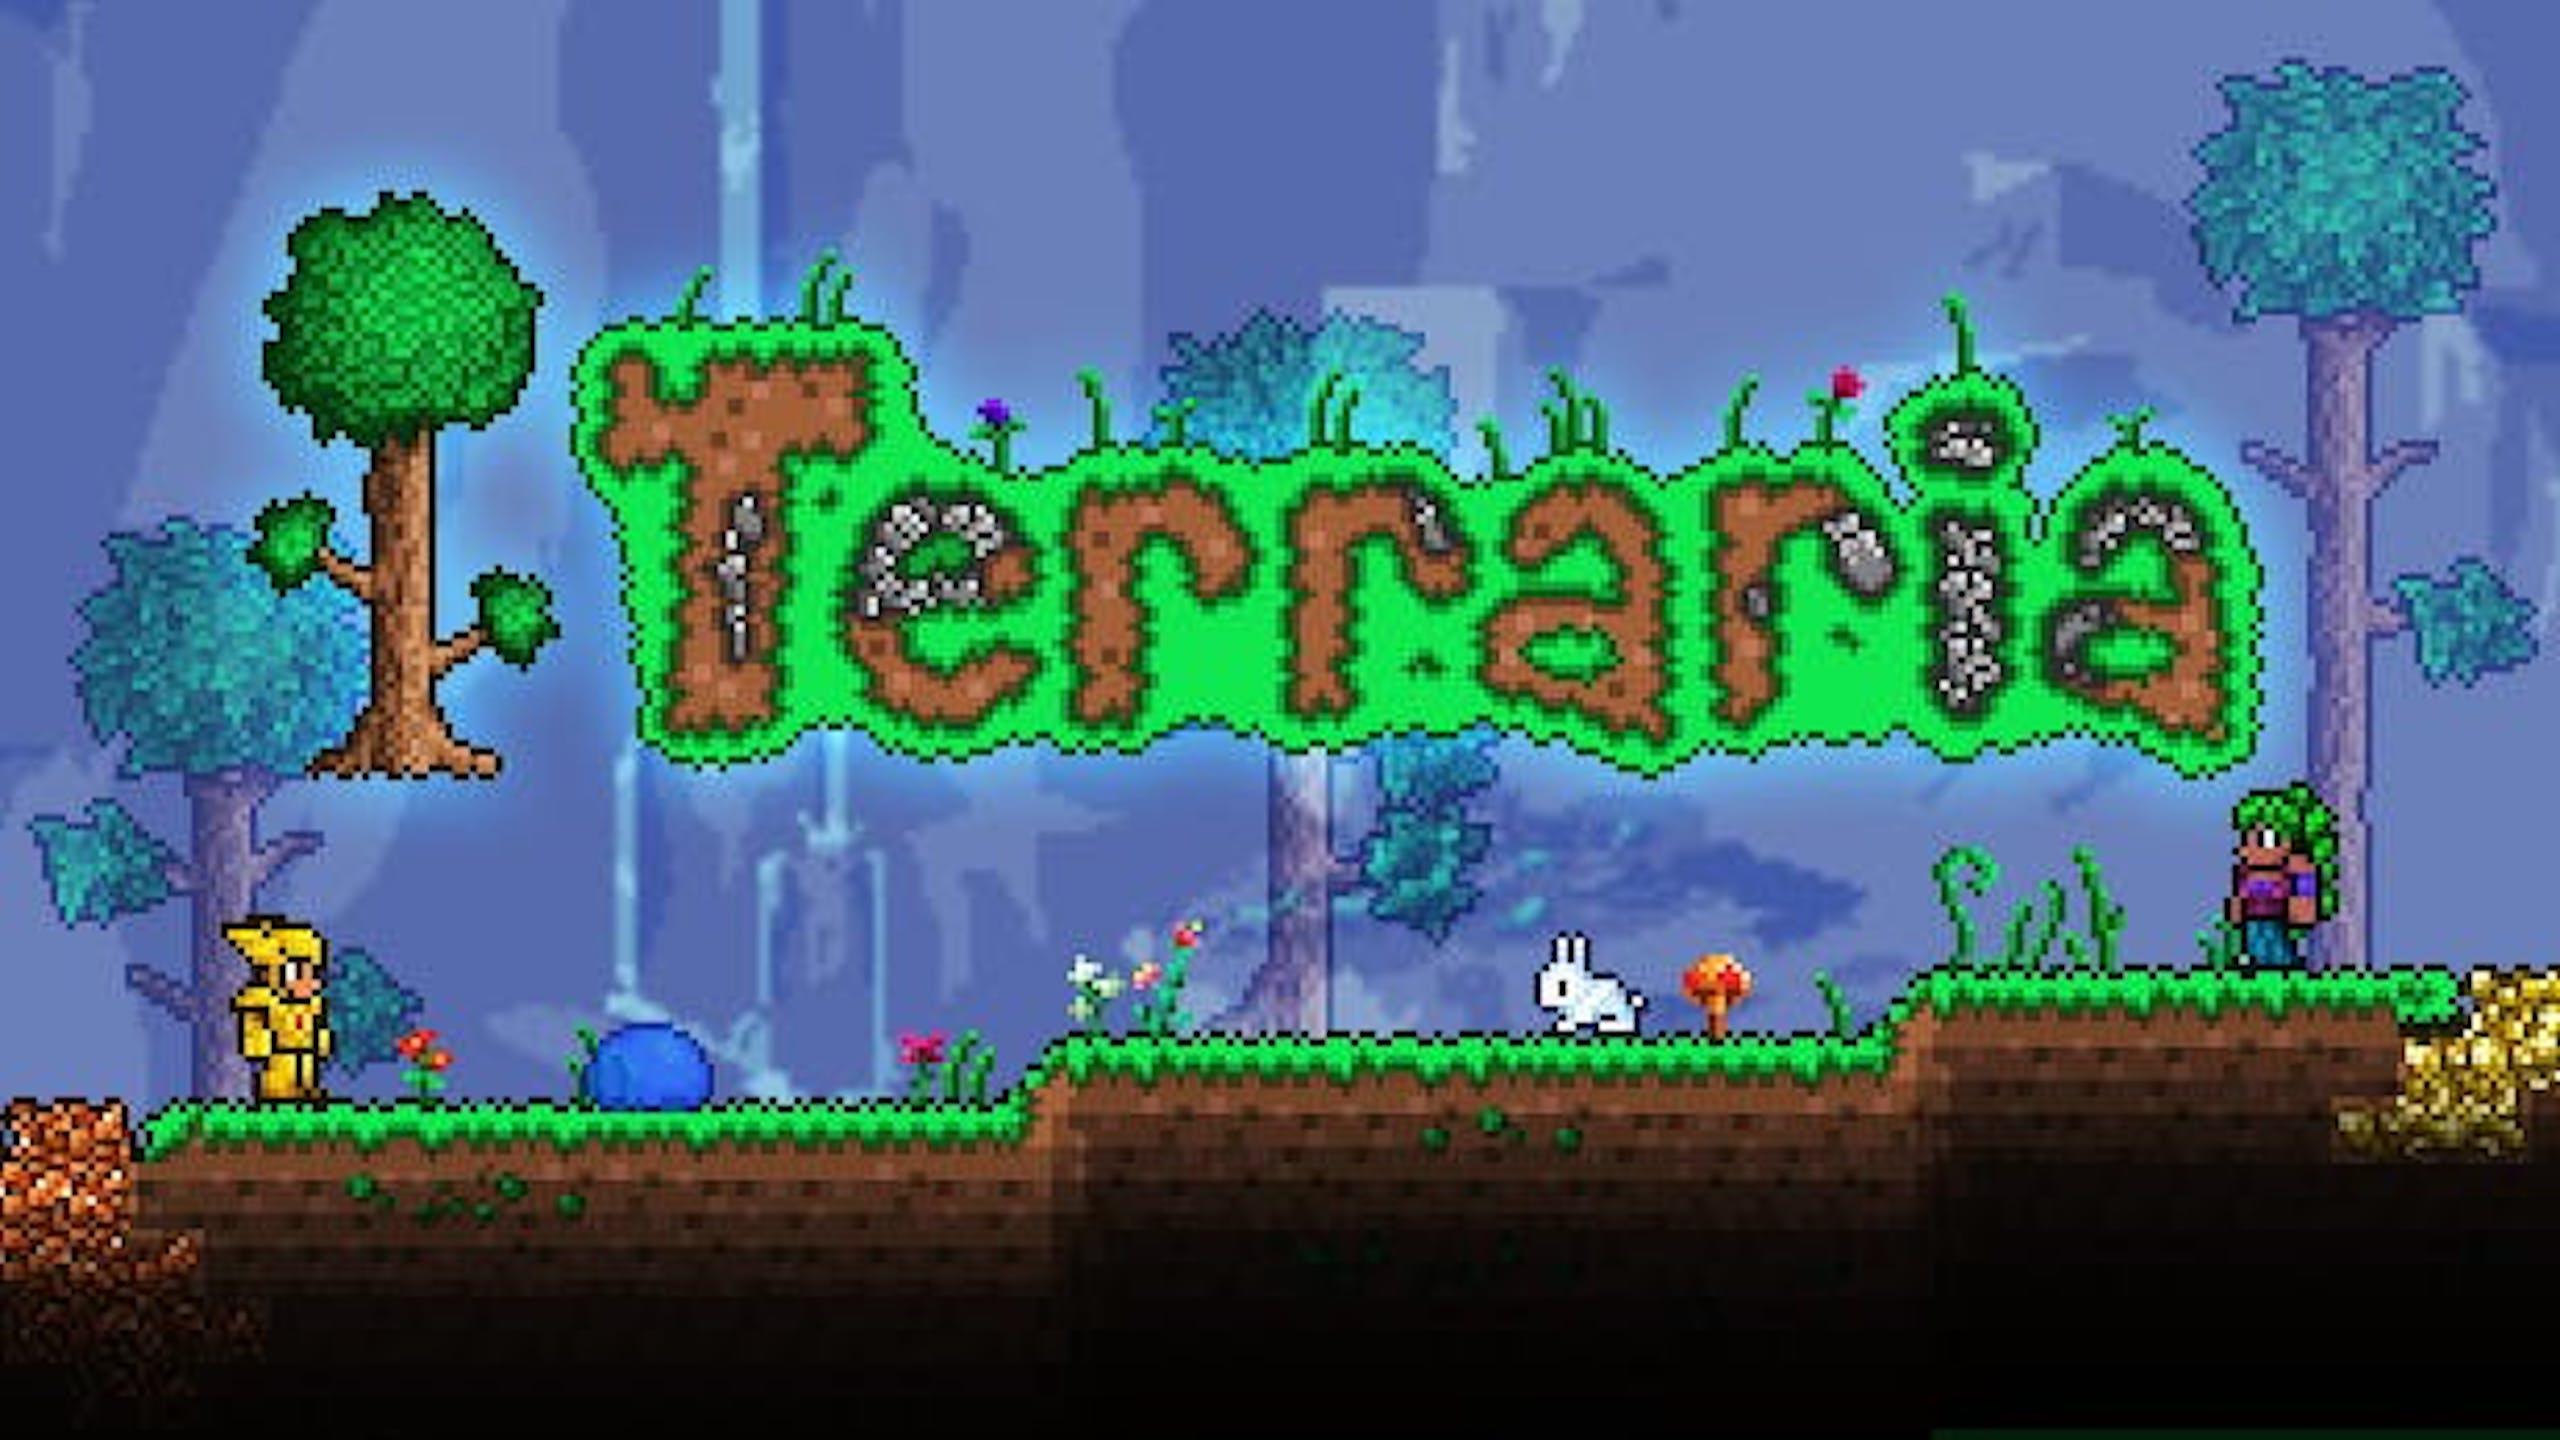 последняя версия игры terraria для пк фото 53